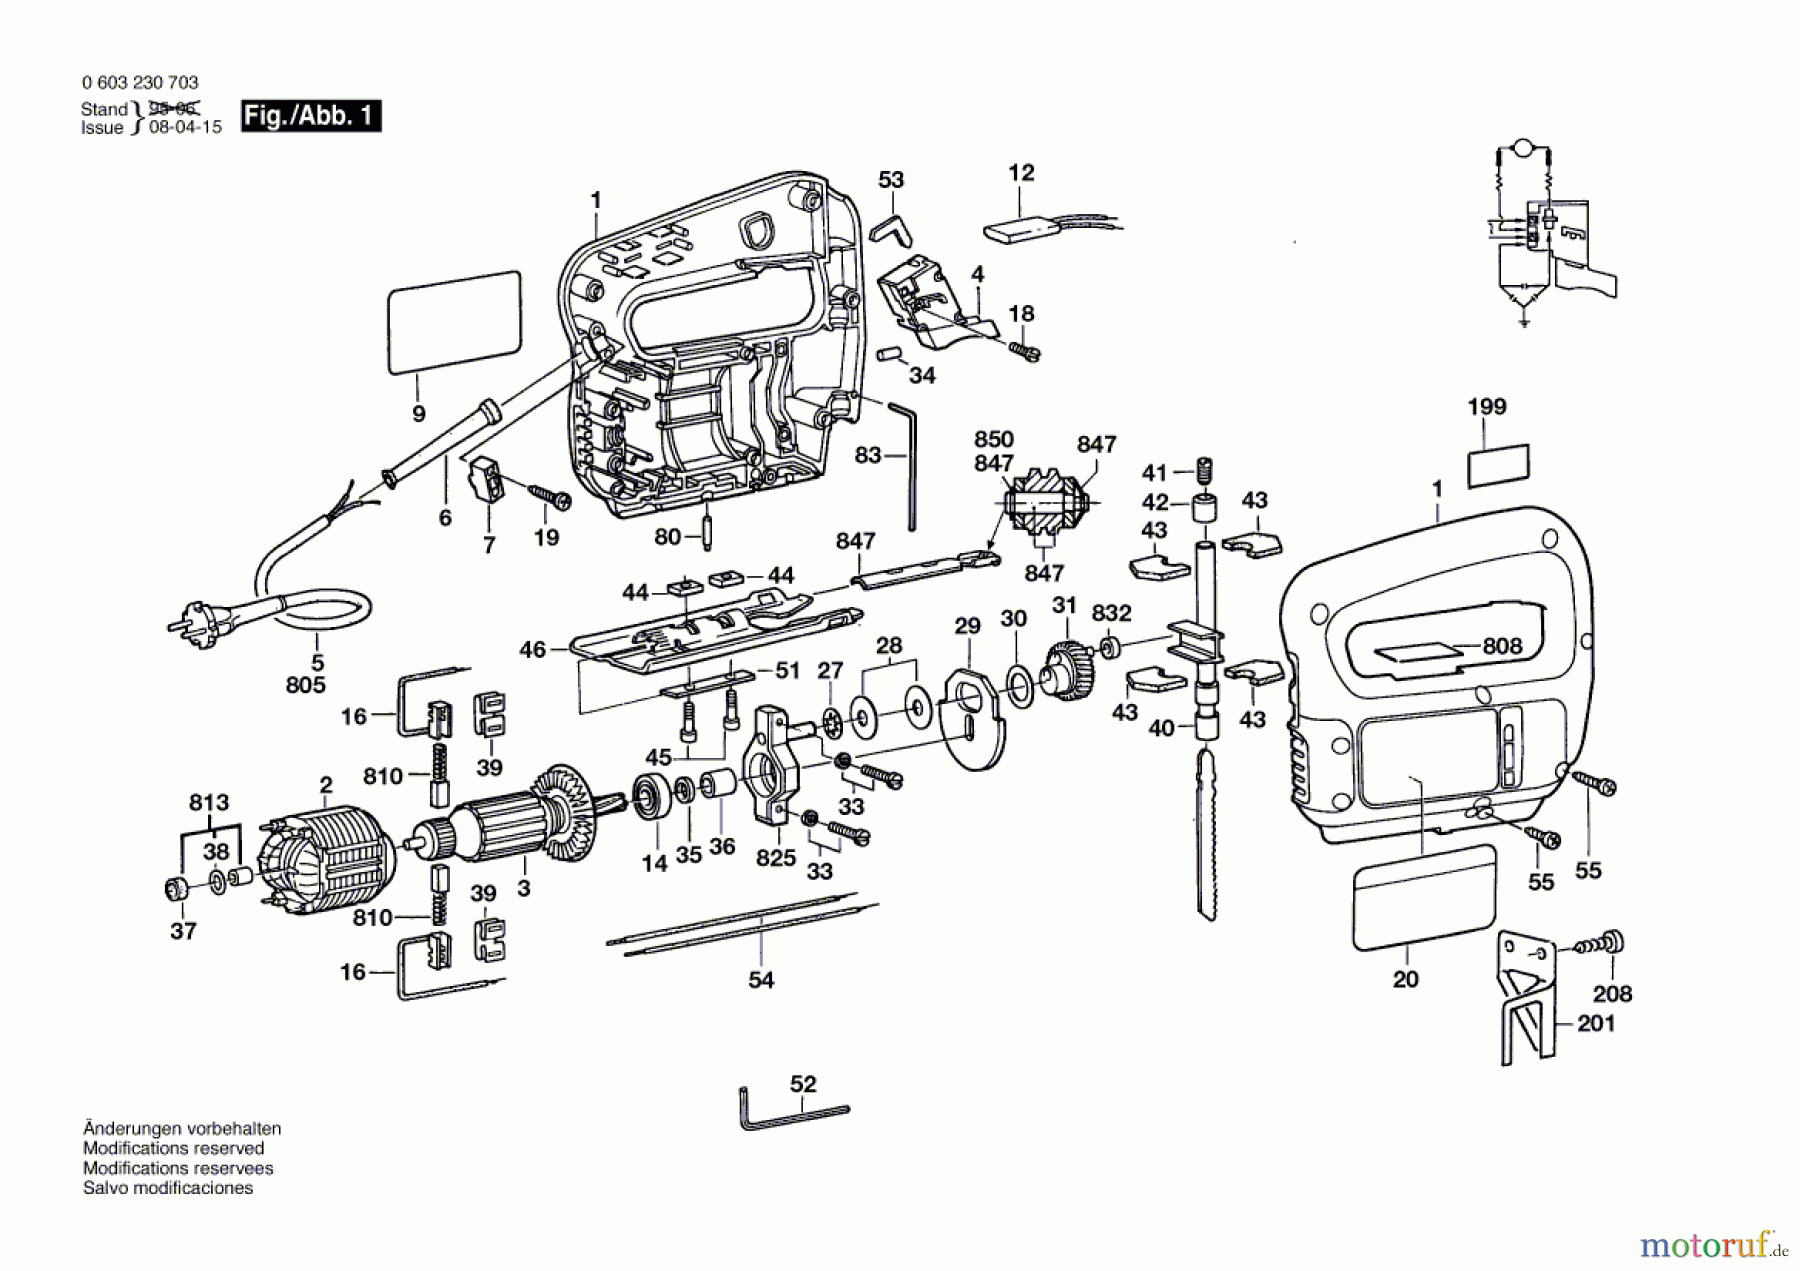  Bosch Werkzeug Stichsäge PST 54 E Seite 1